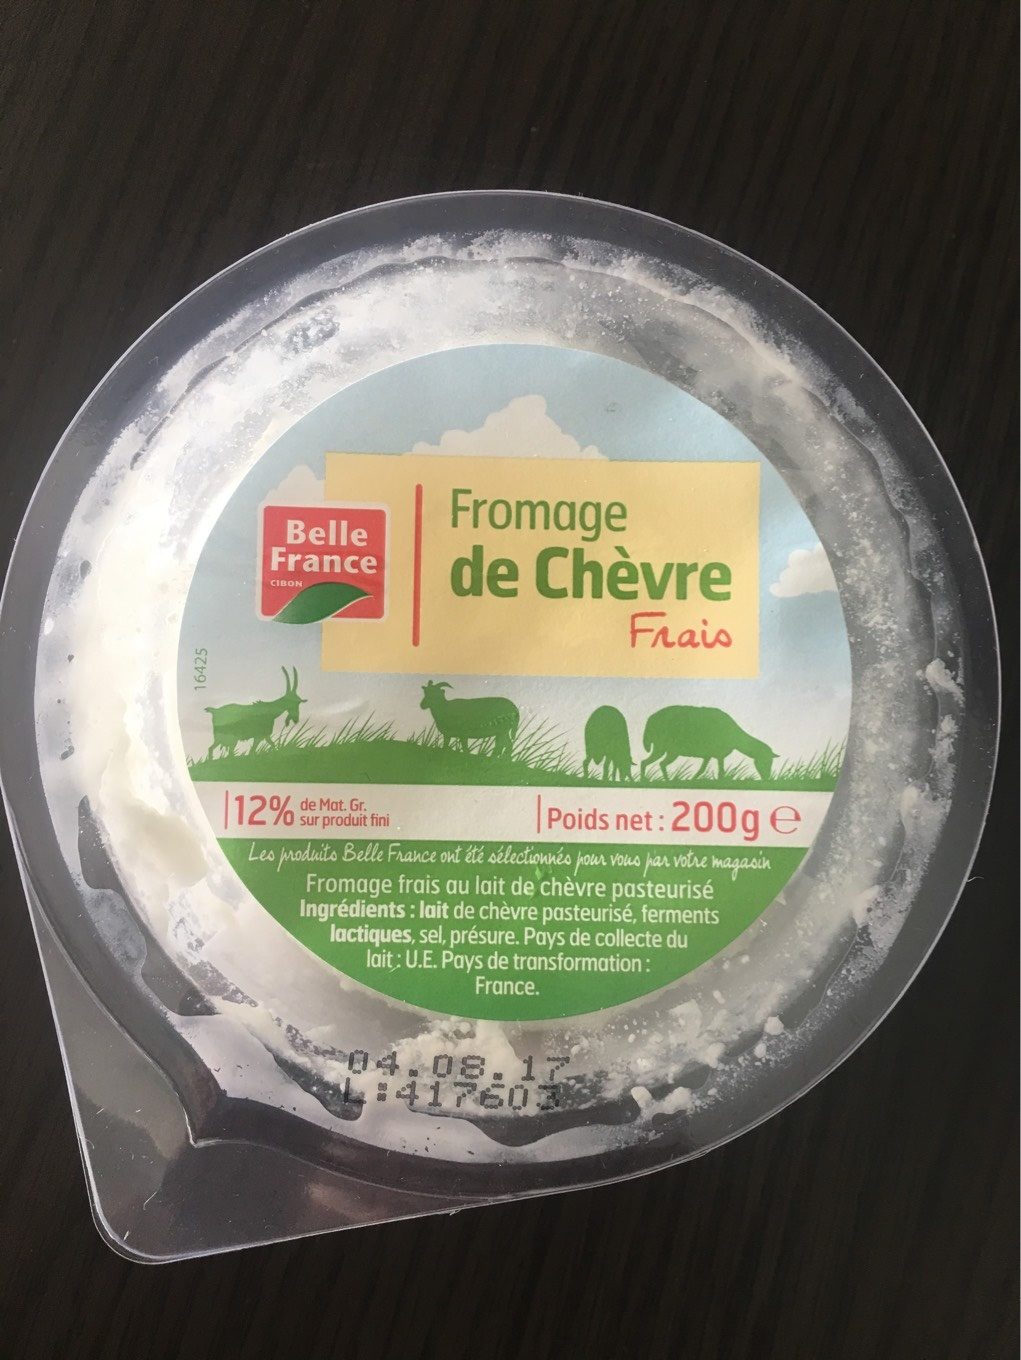 Fromage de chèvre Frais (12% MG) - Product - fr